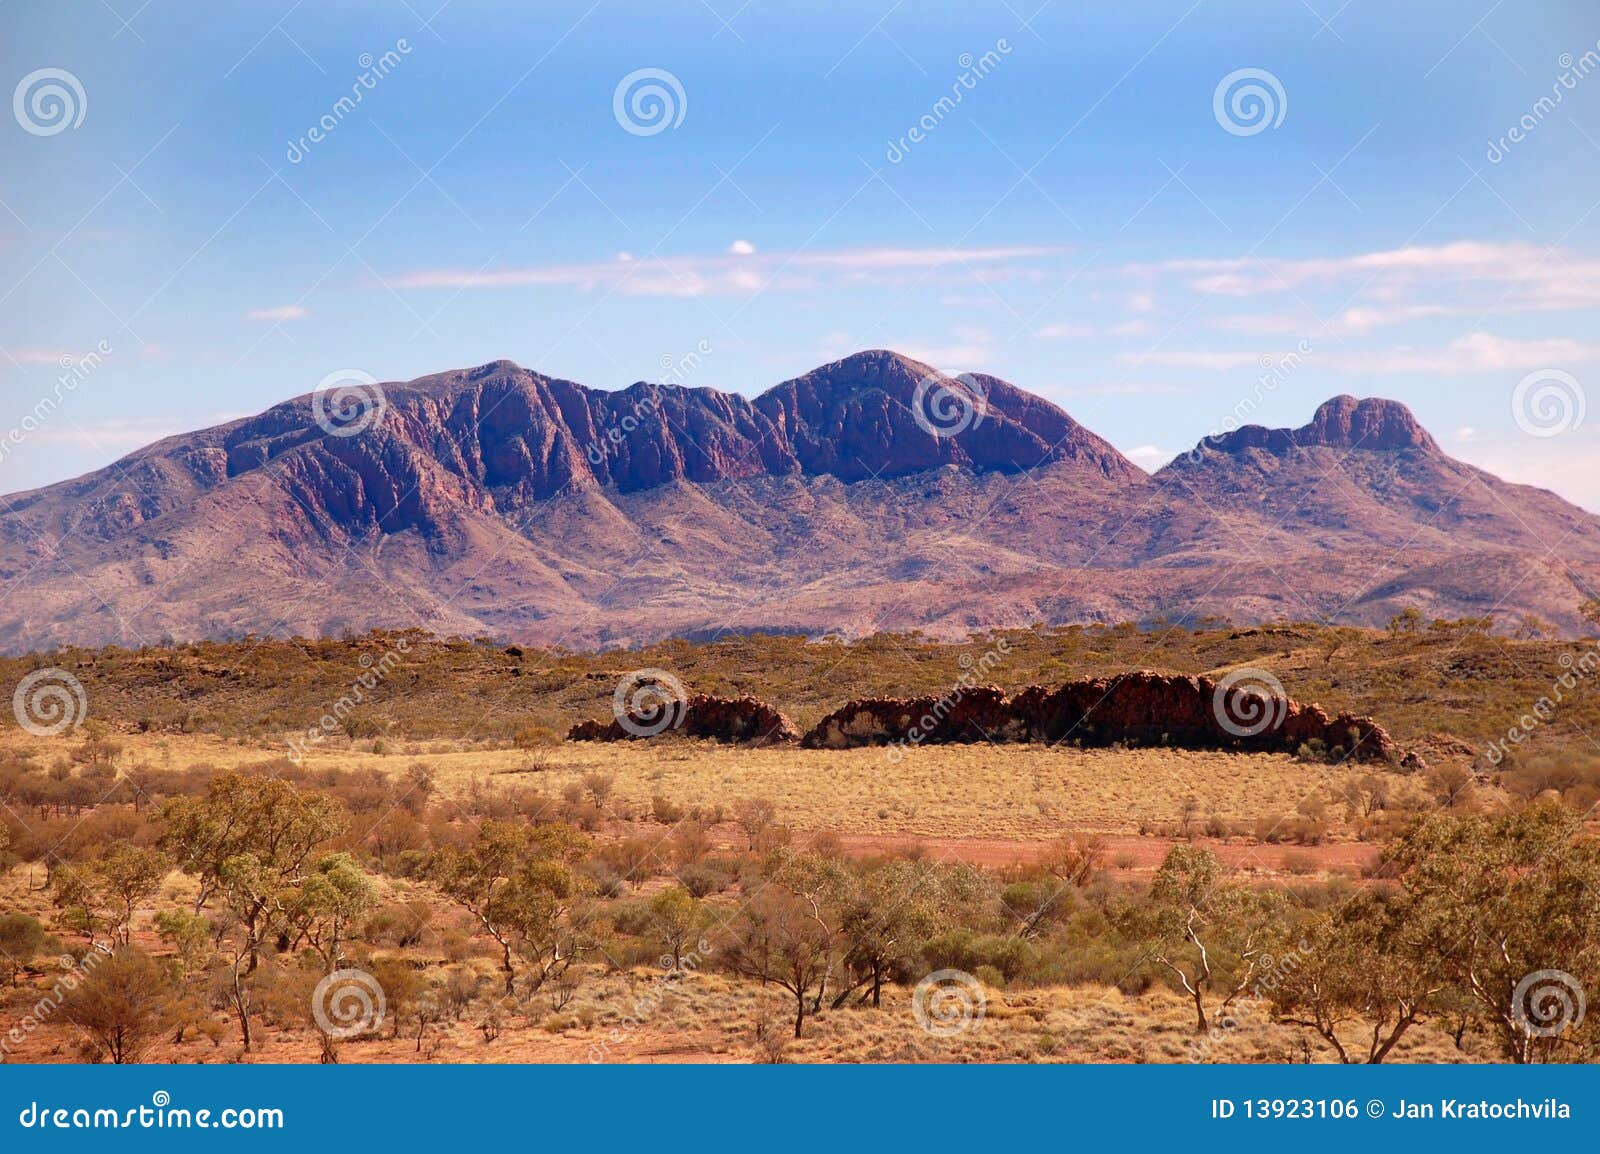 flinders ranges mountains in australia